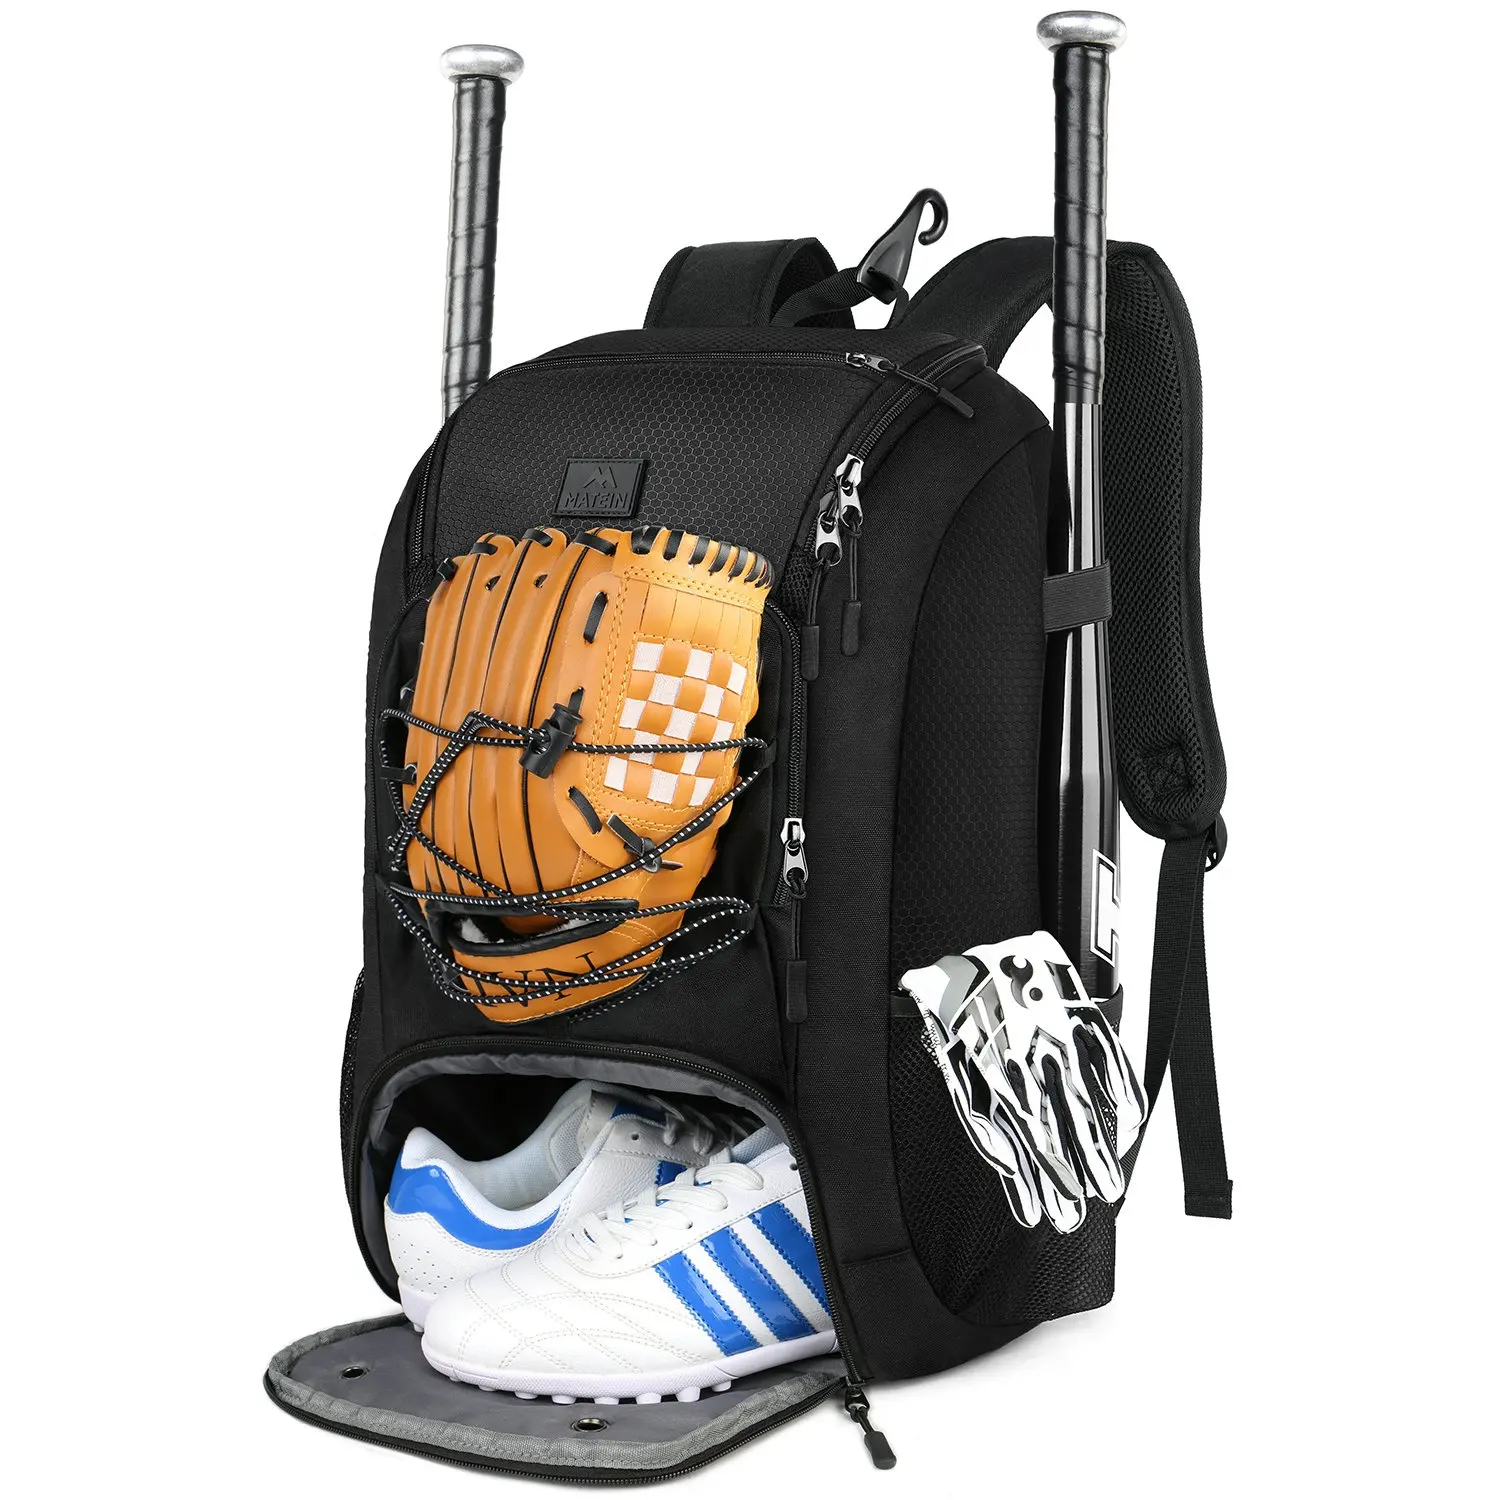 MATEIN oxford softbol yarasa çantası beyzbol sırt çantası ayakkabı bölmesi ile gençlik erkek ve yetişkin sırt çantası açık seyahat spor